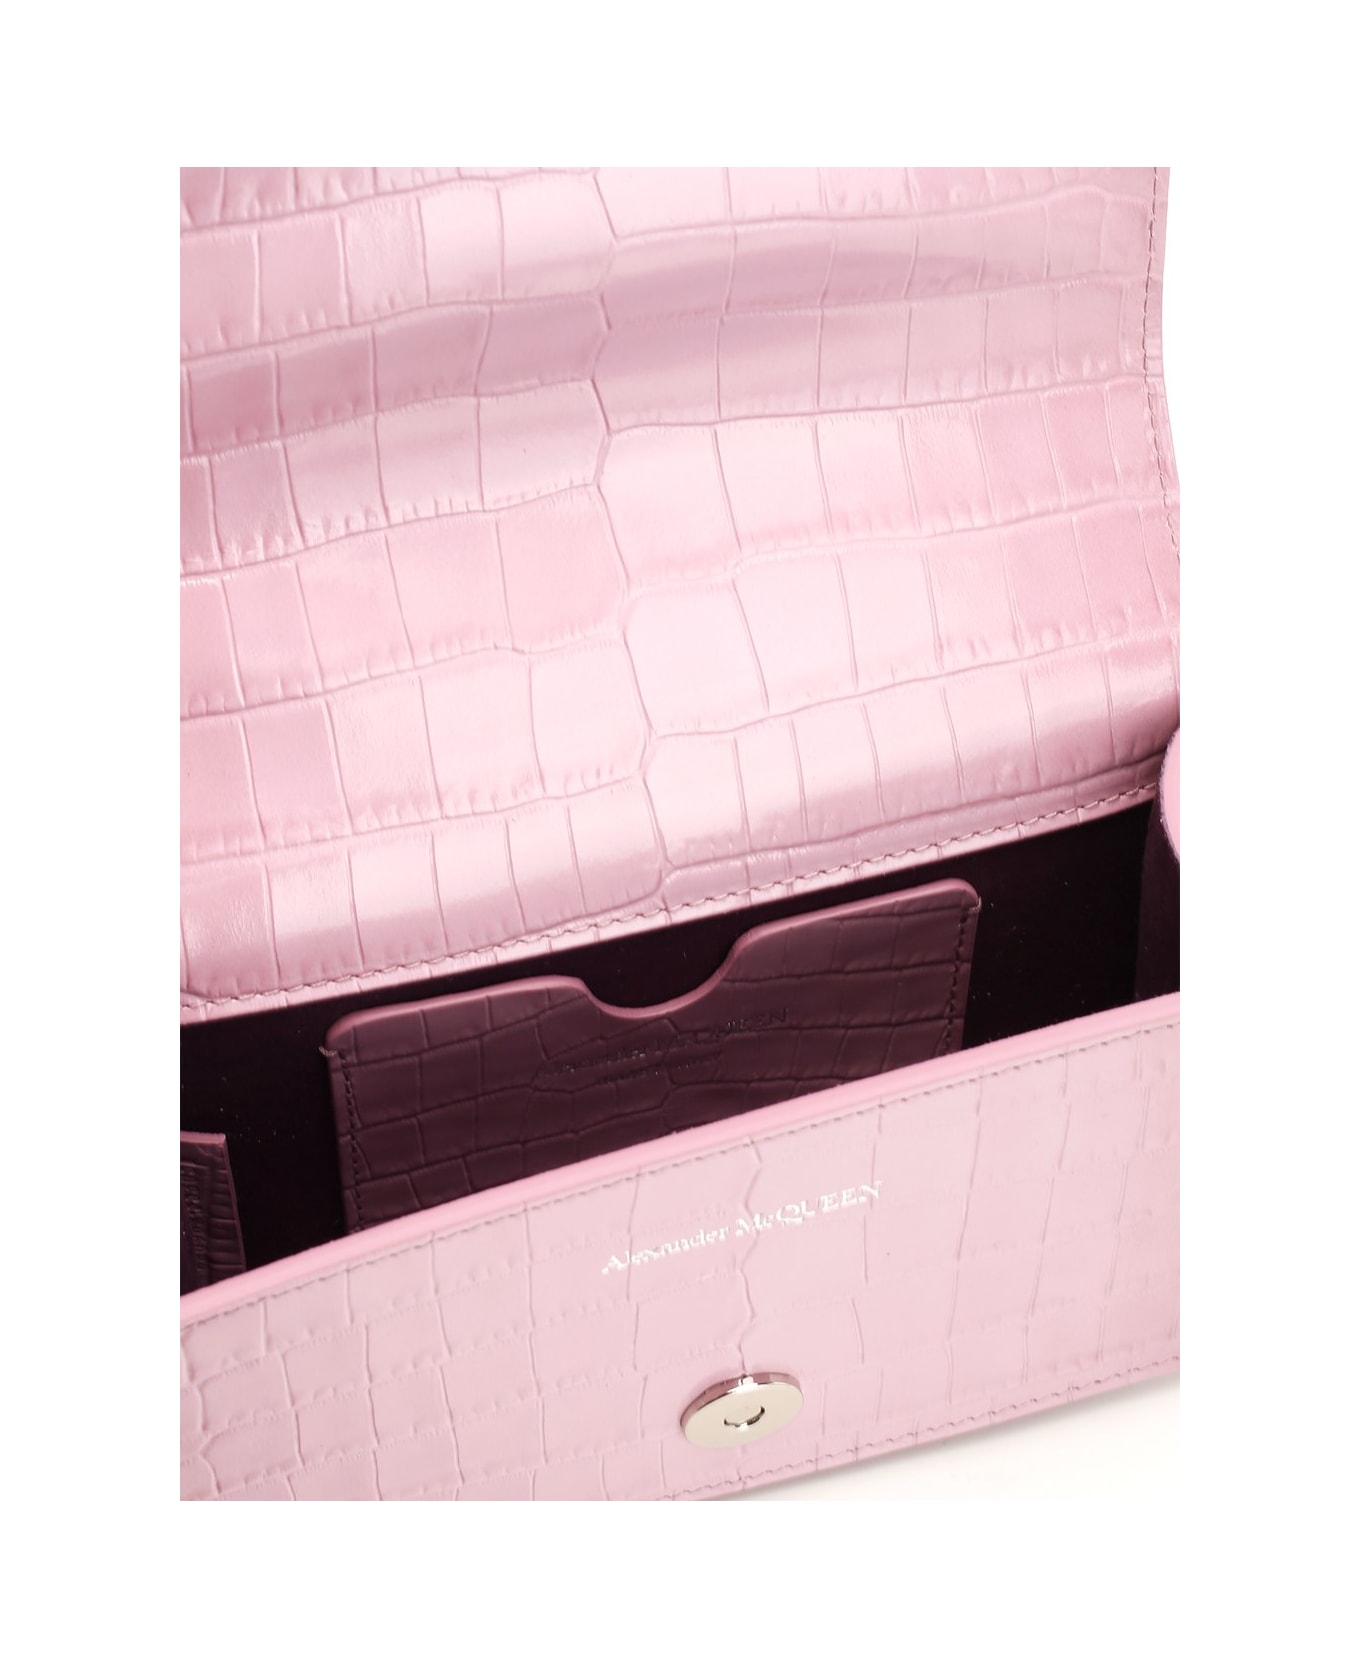 Alexander McQueen Jewel Mini Bag - Rosa